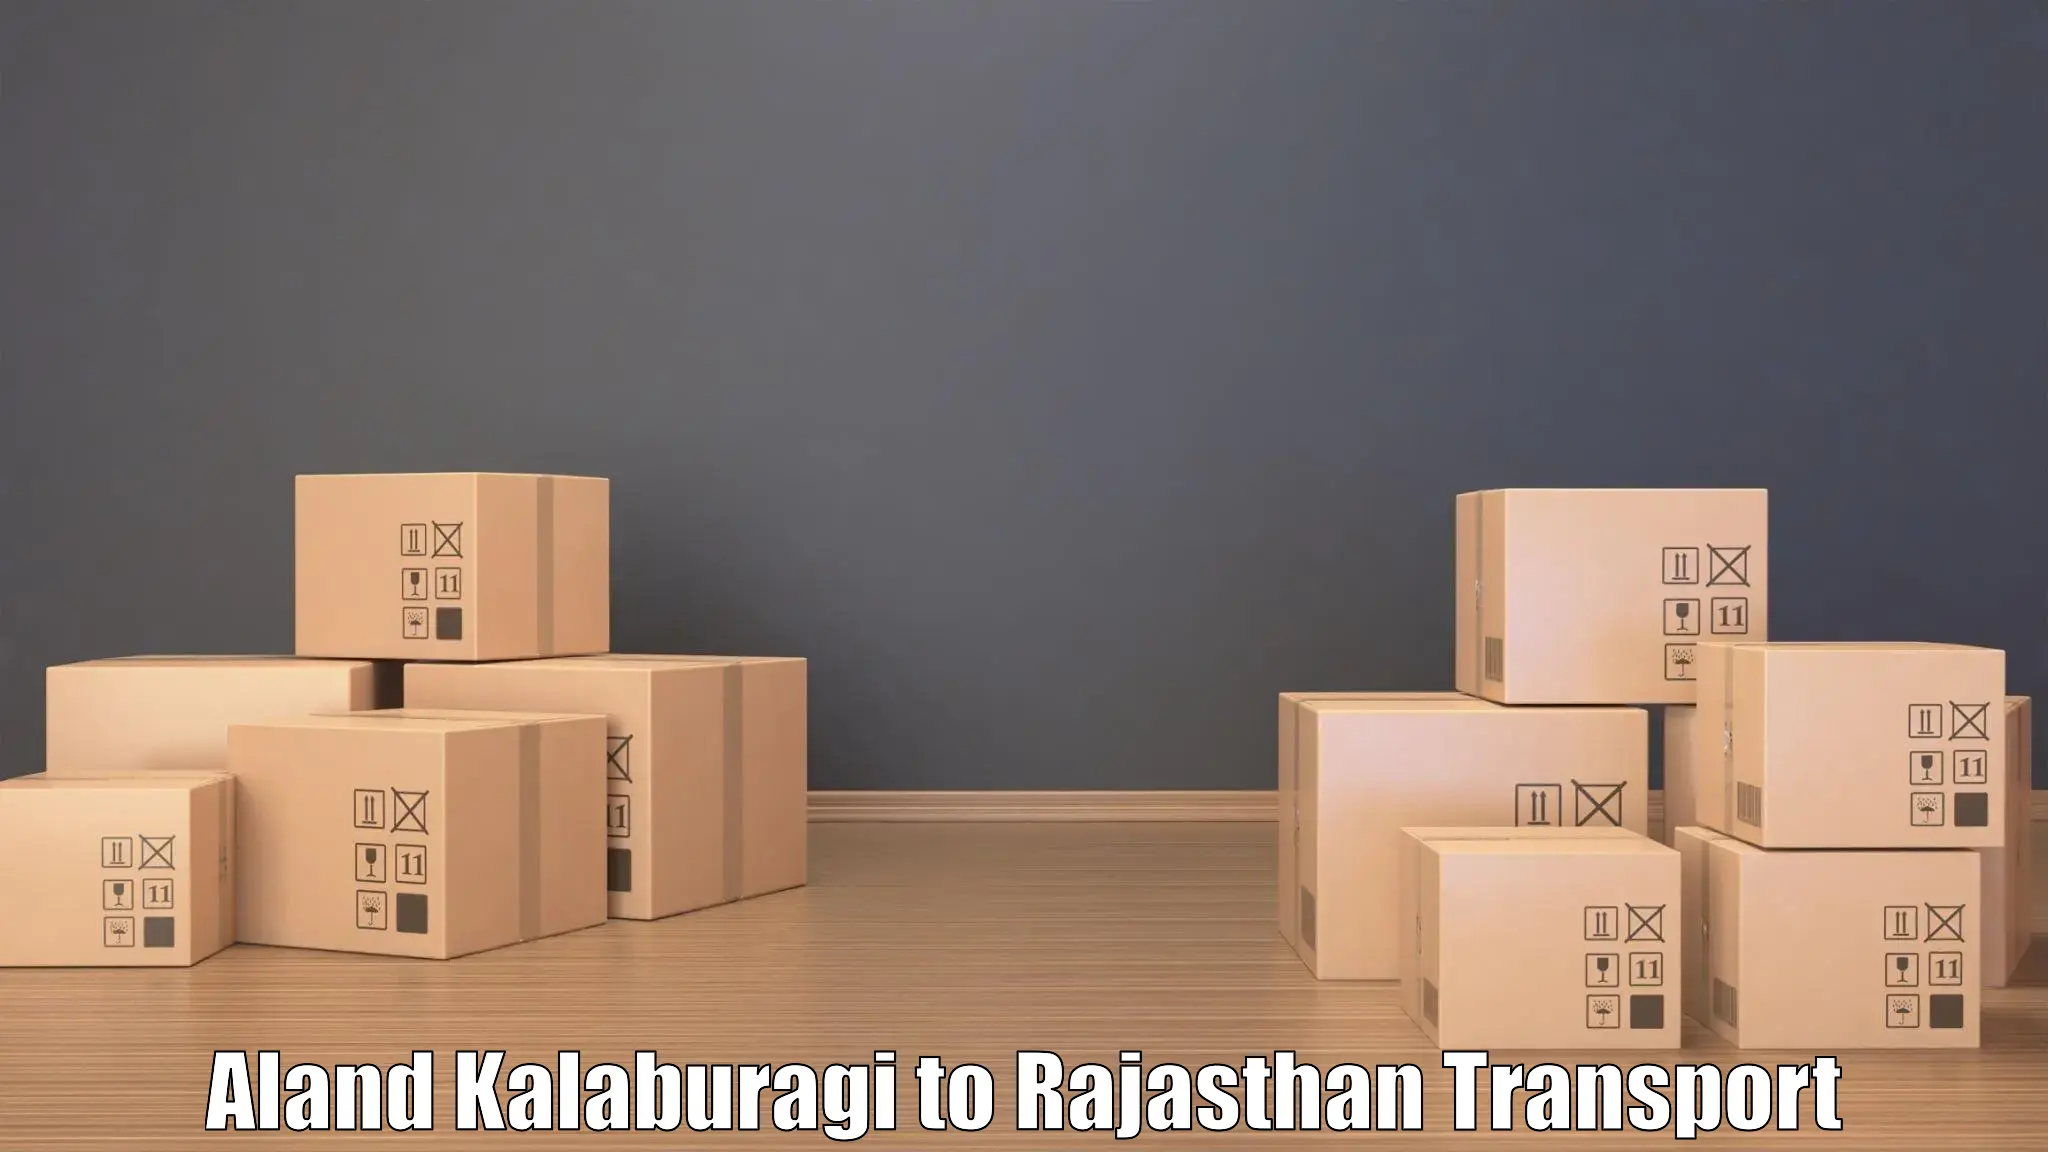 Air freight transport services Aland Kalaburagi to Banar